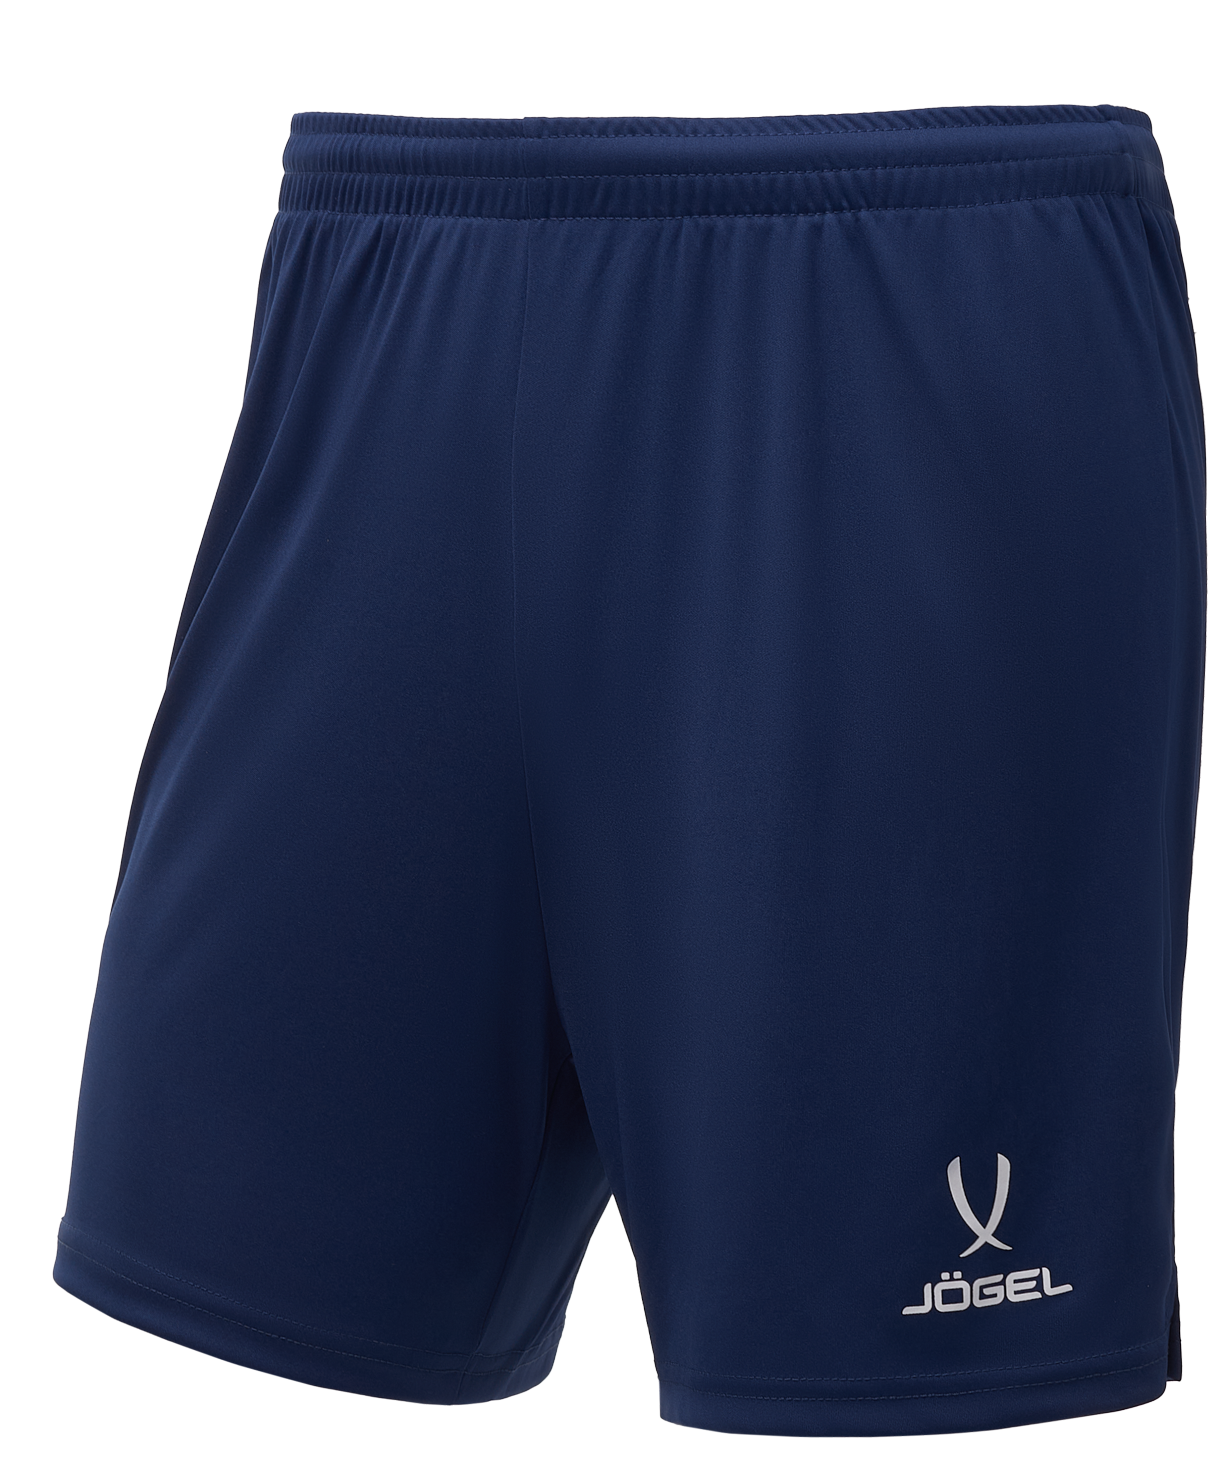 Шорты волейбольные  Jogel Camp, темно-синий, детский - XS шорты волейбольные jogel camp темно синий